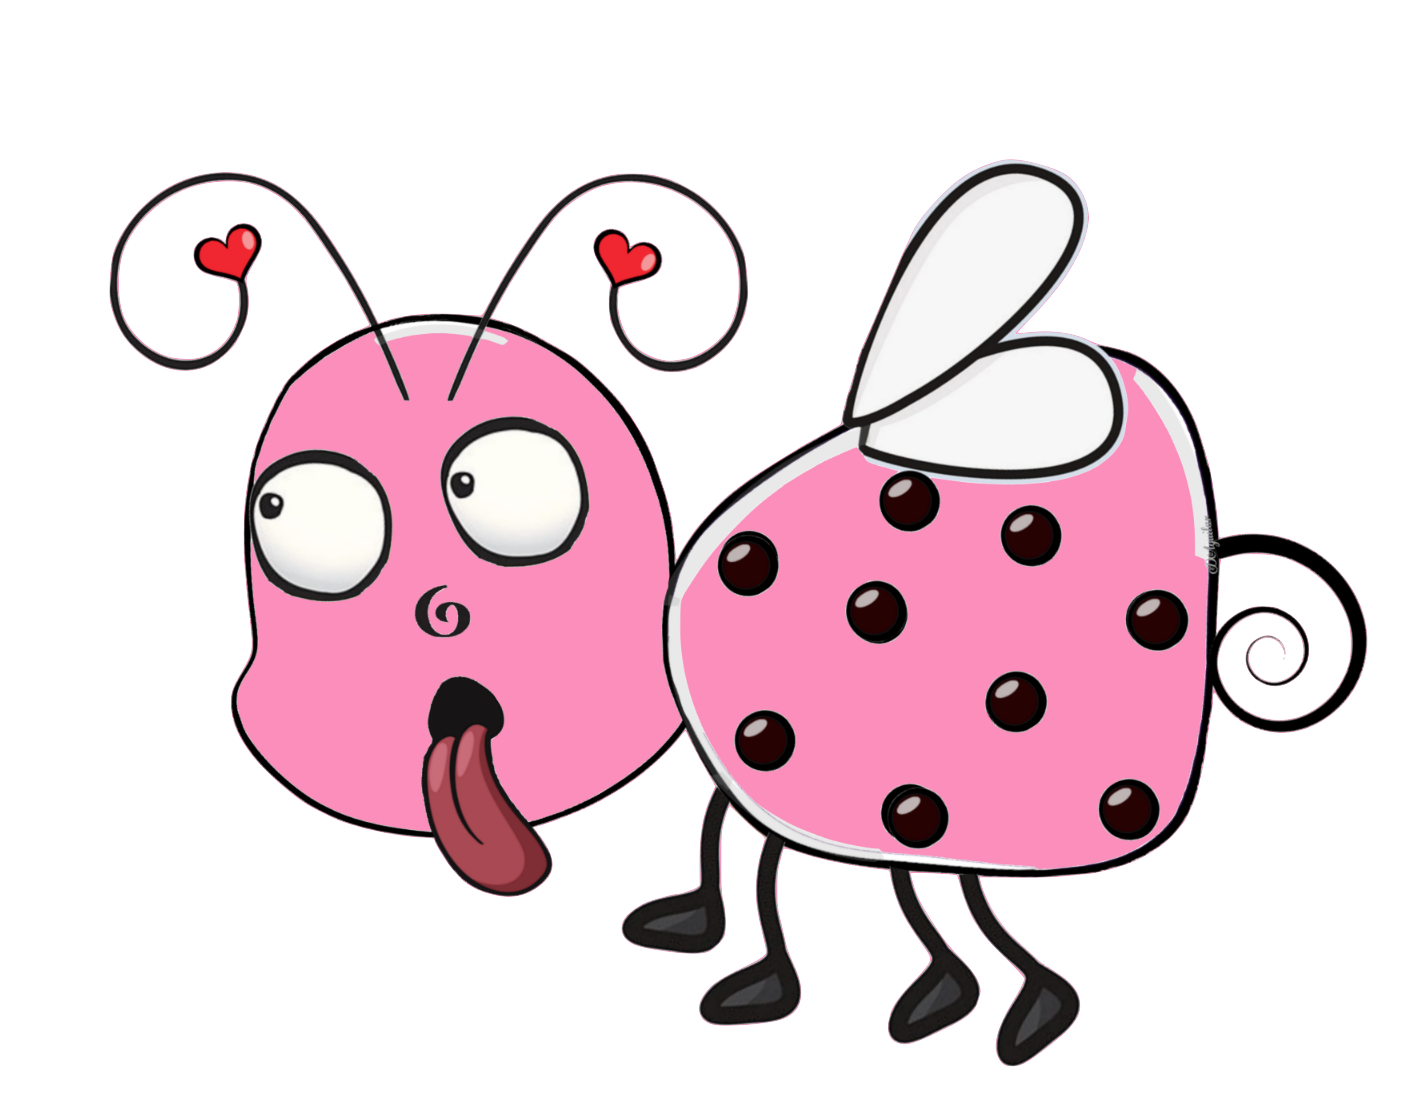 PINK Set - "Doodle Bug" set - Cute little bugs 7 colors - 3 poses